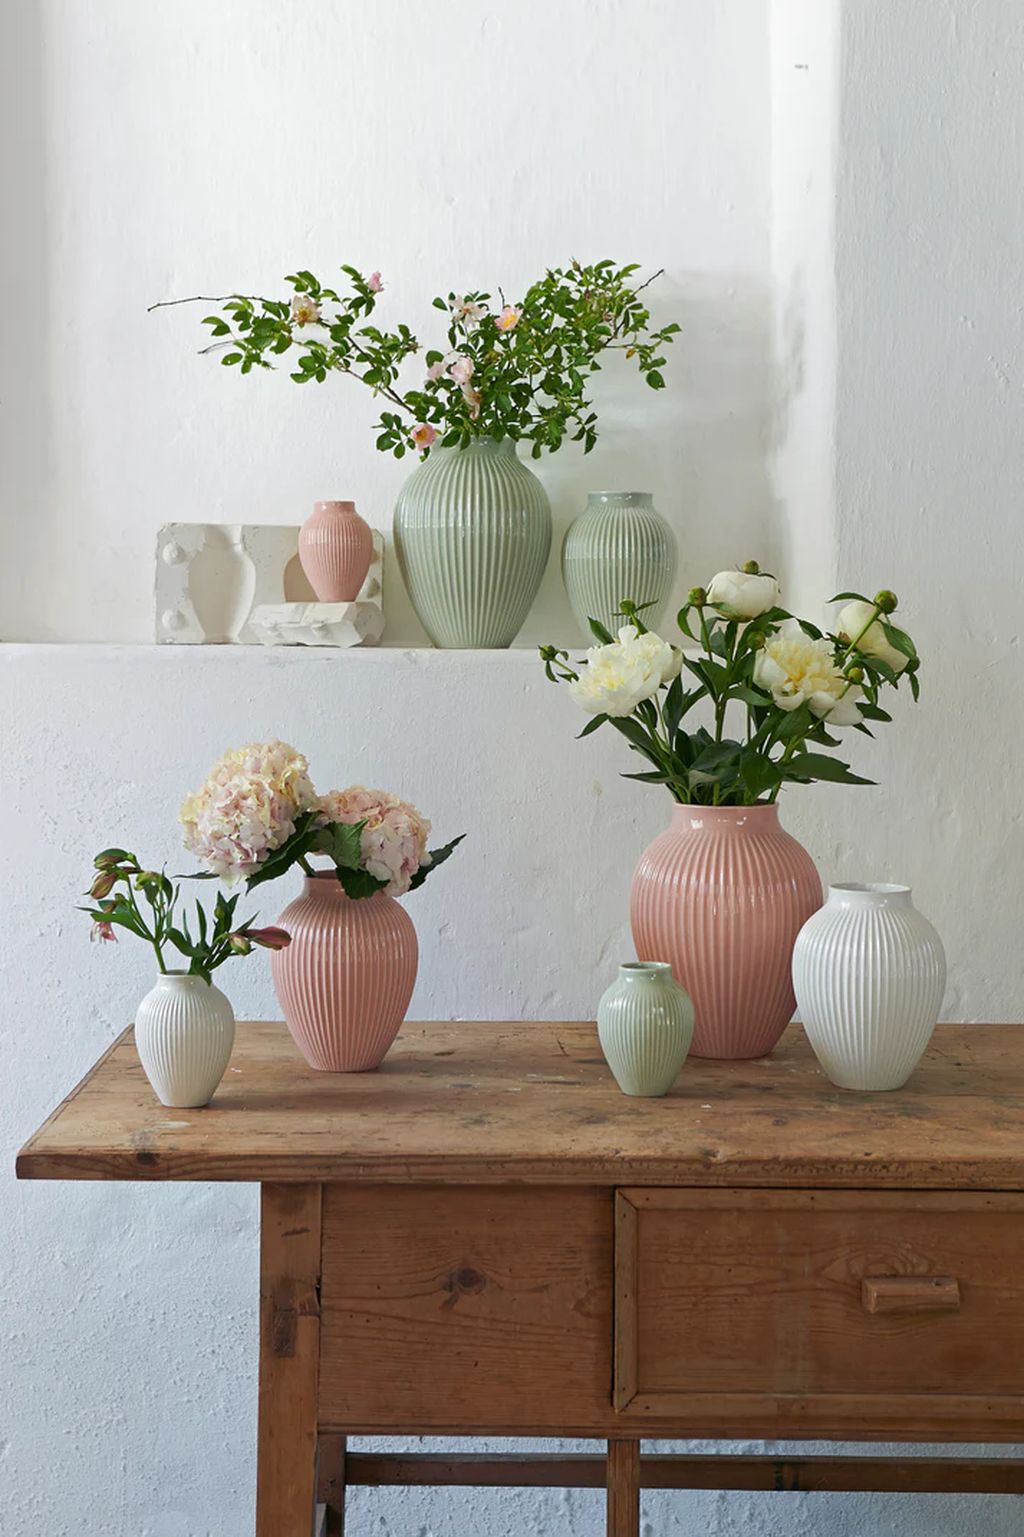 Knabstrup Keramik Vase med Riller H 27 cm, Irgrøn